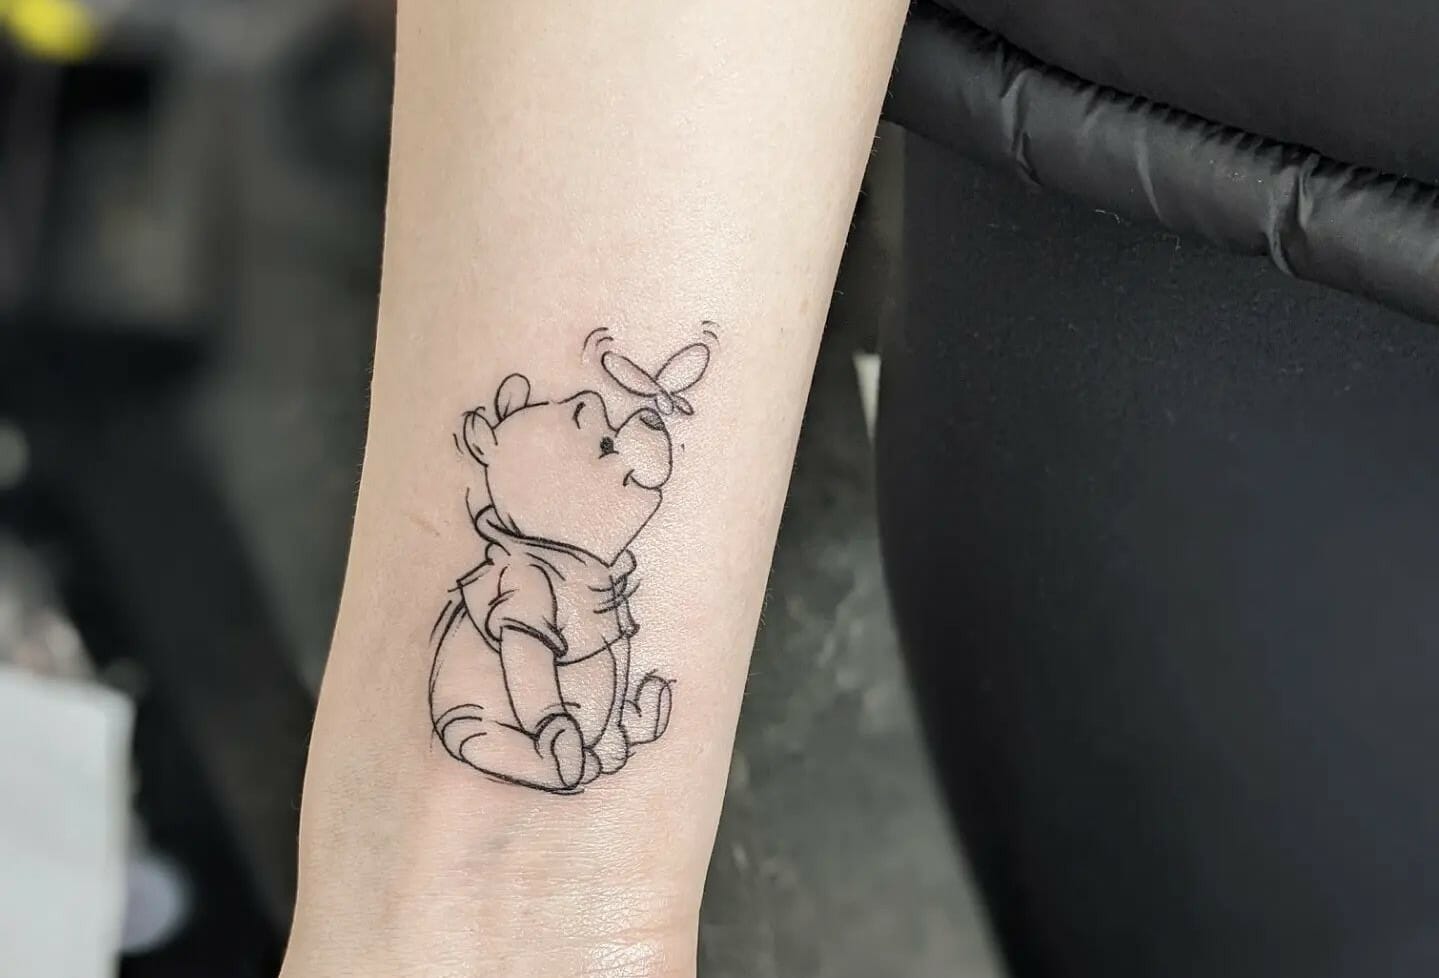 pooh bear tattoo ideasTikTok Search